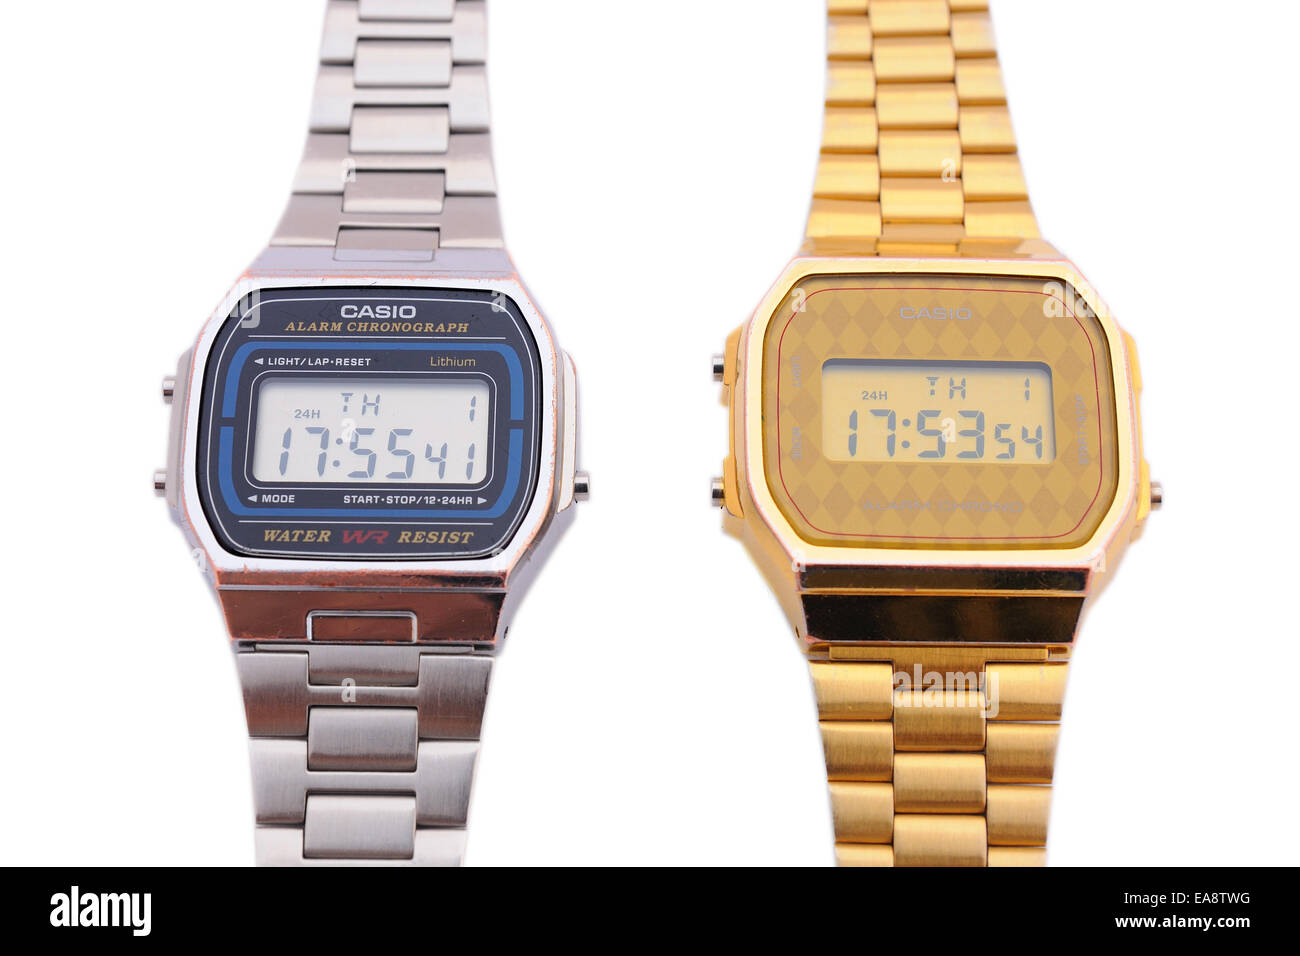 BARCELONA - Juli 12: Zwei Casio Uhren eine goldene Farbe und die andere in Silber am 12. Juli 2013 in Barcelona, Spanien. Stockfoto